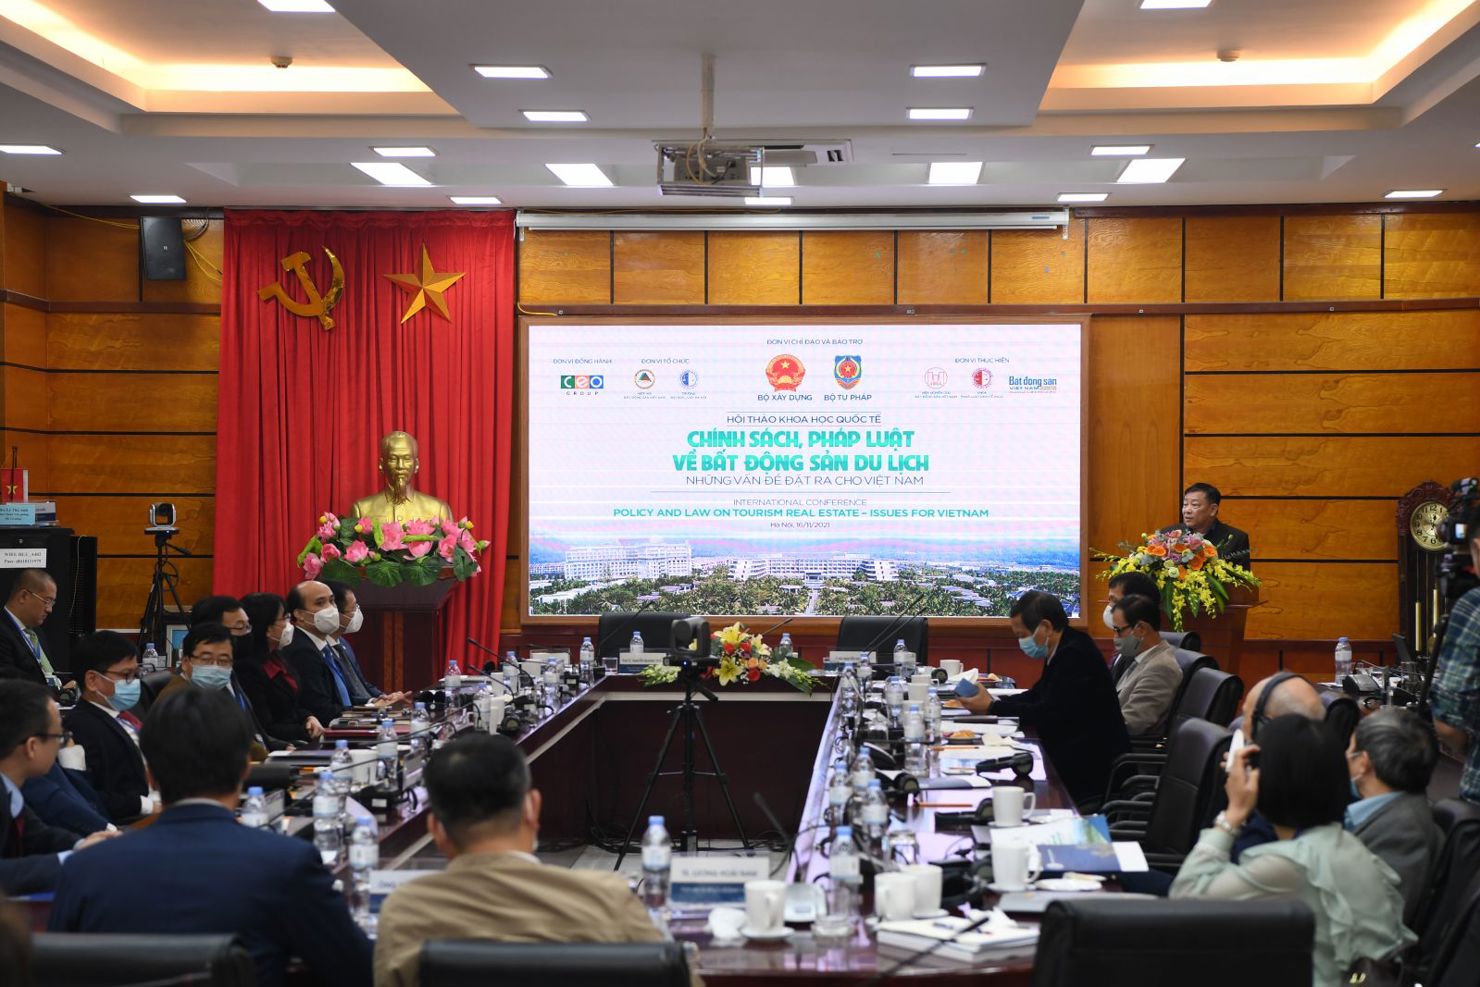 Toàn cảnh Hội thảo quốc tế "chính sách, pháp luật về bất động sản du lịch - Những vấn đề đặt ra cho Việt  Nam". Ảnh: VGP